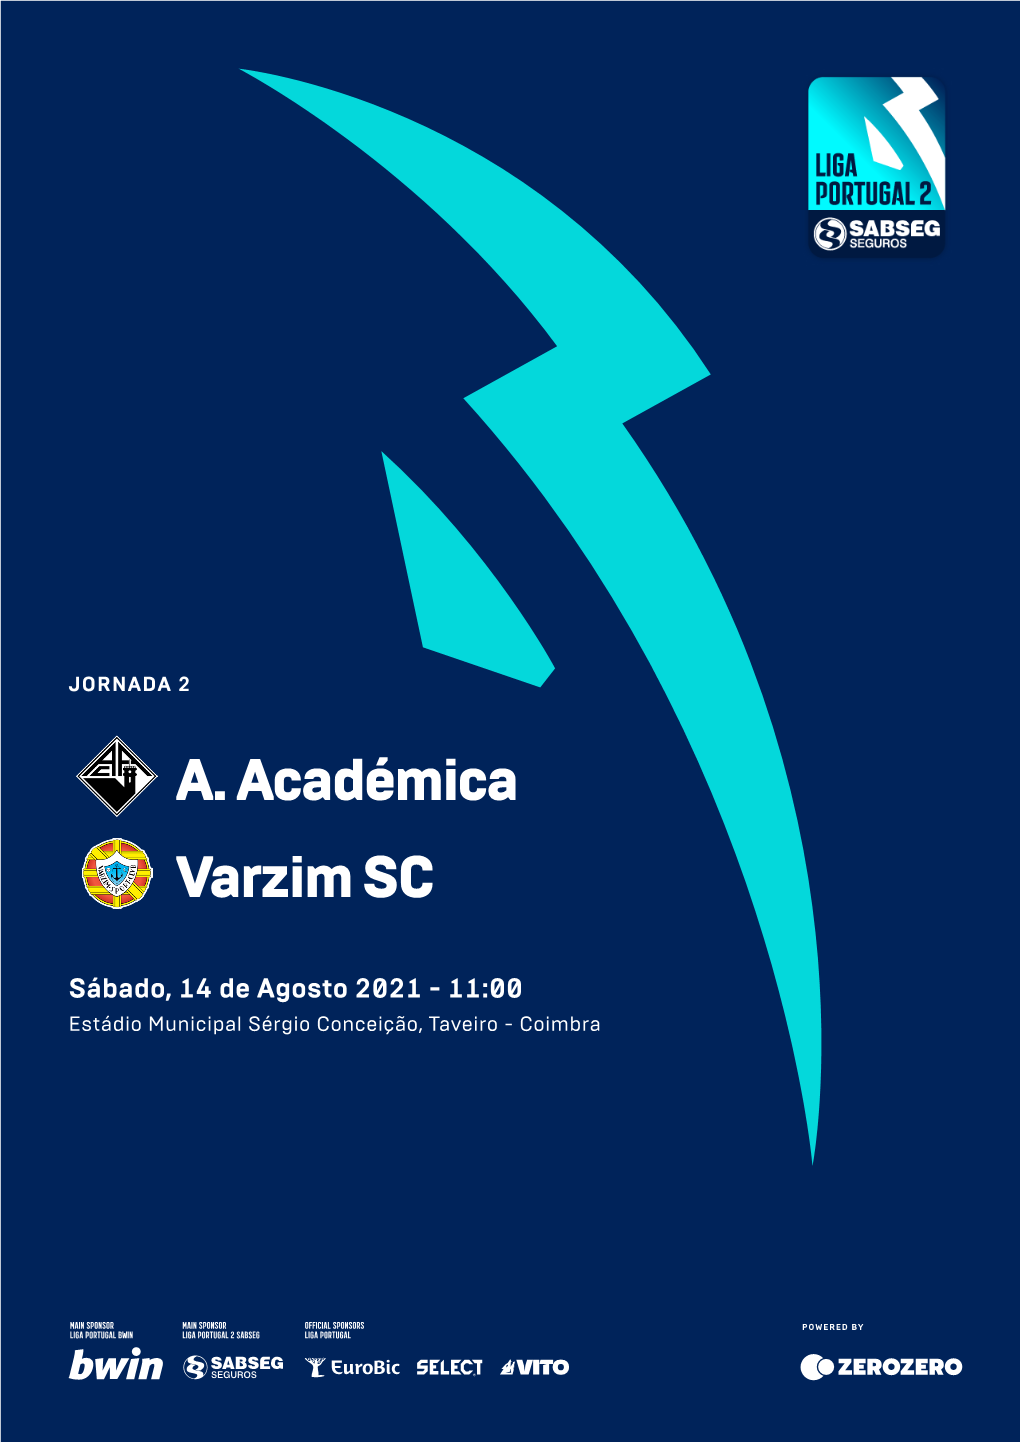 A. Académica Varzim SC